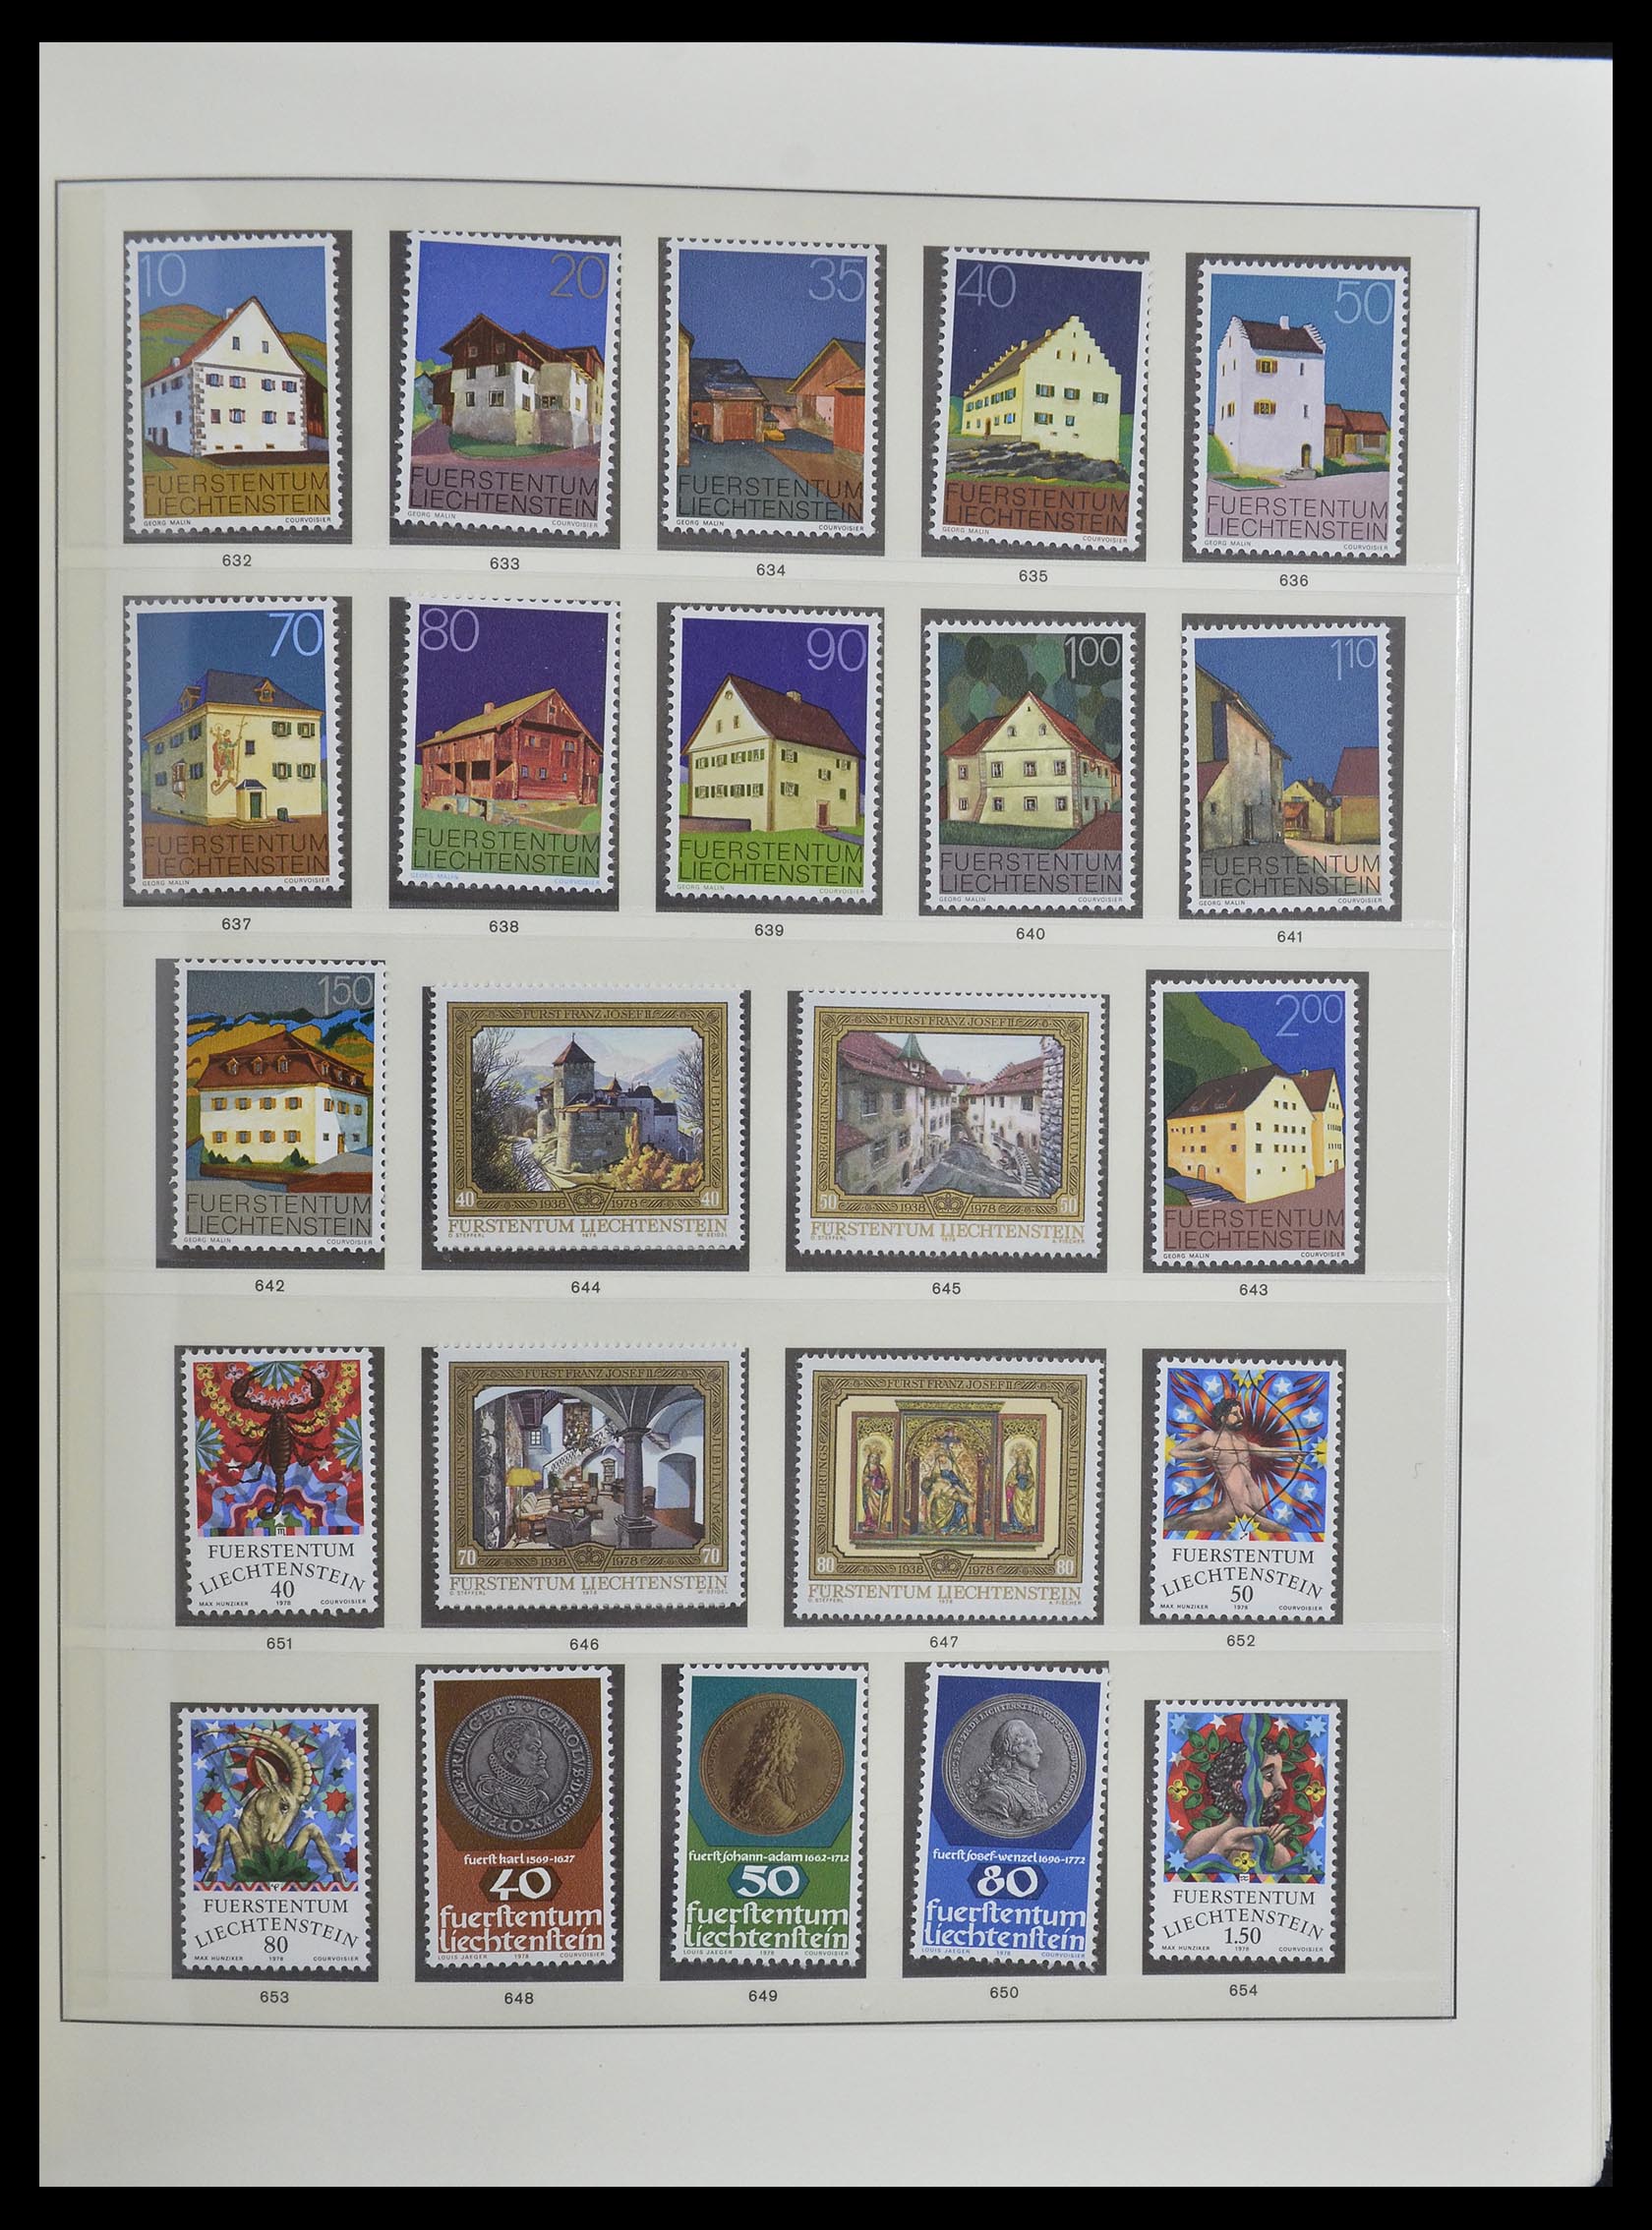 33140 032 - Stamp collection 33140 Liechtenstein 1912-1990.